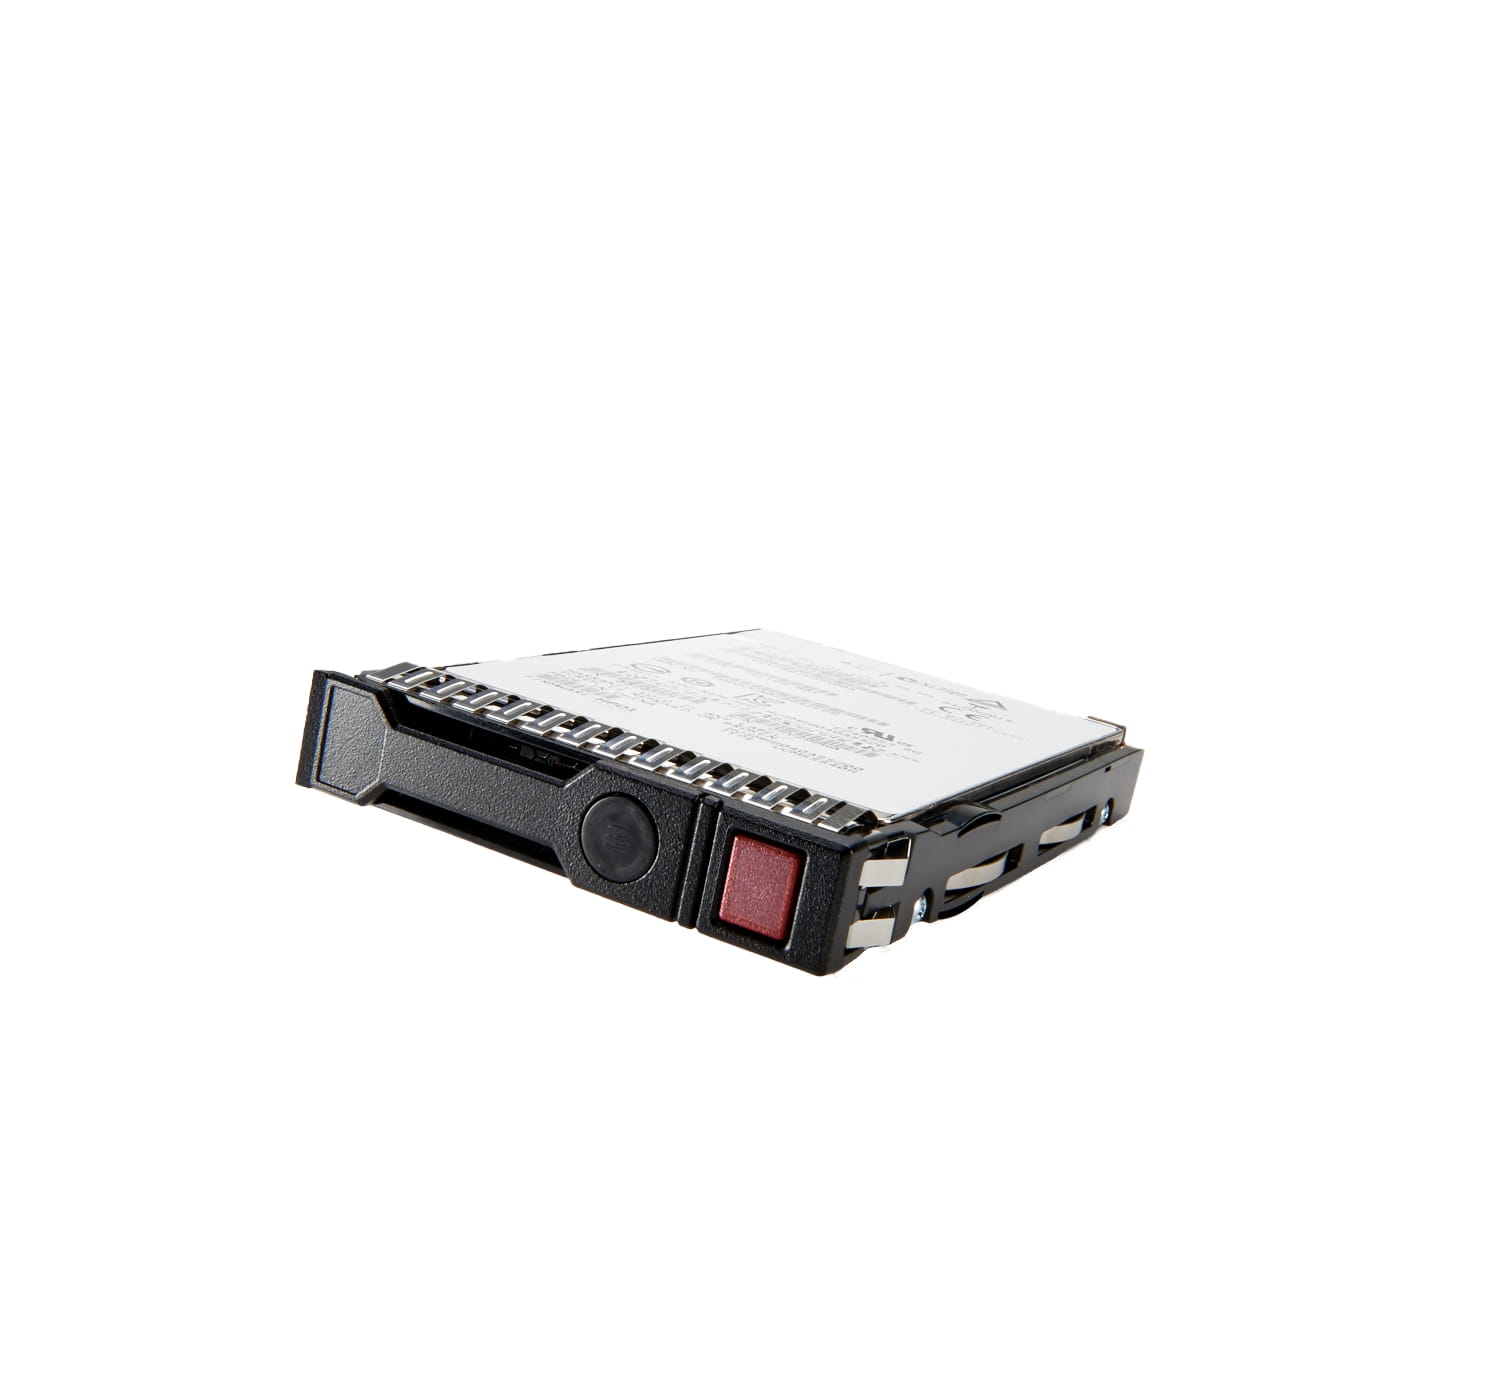 HPE SSD - Read Intensive - 1.92 TB - Hot-Swap - 3.5" LFF (8.9 cm LFF)